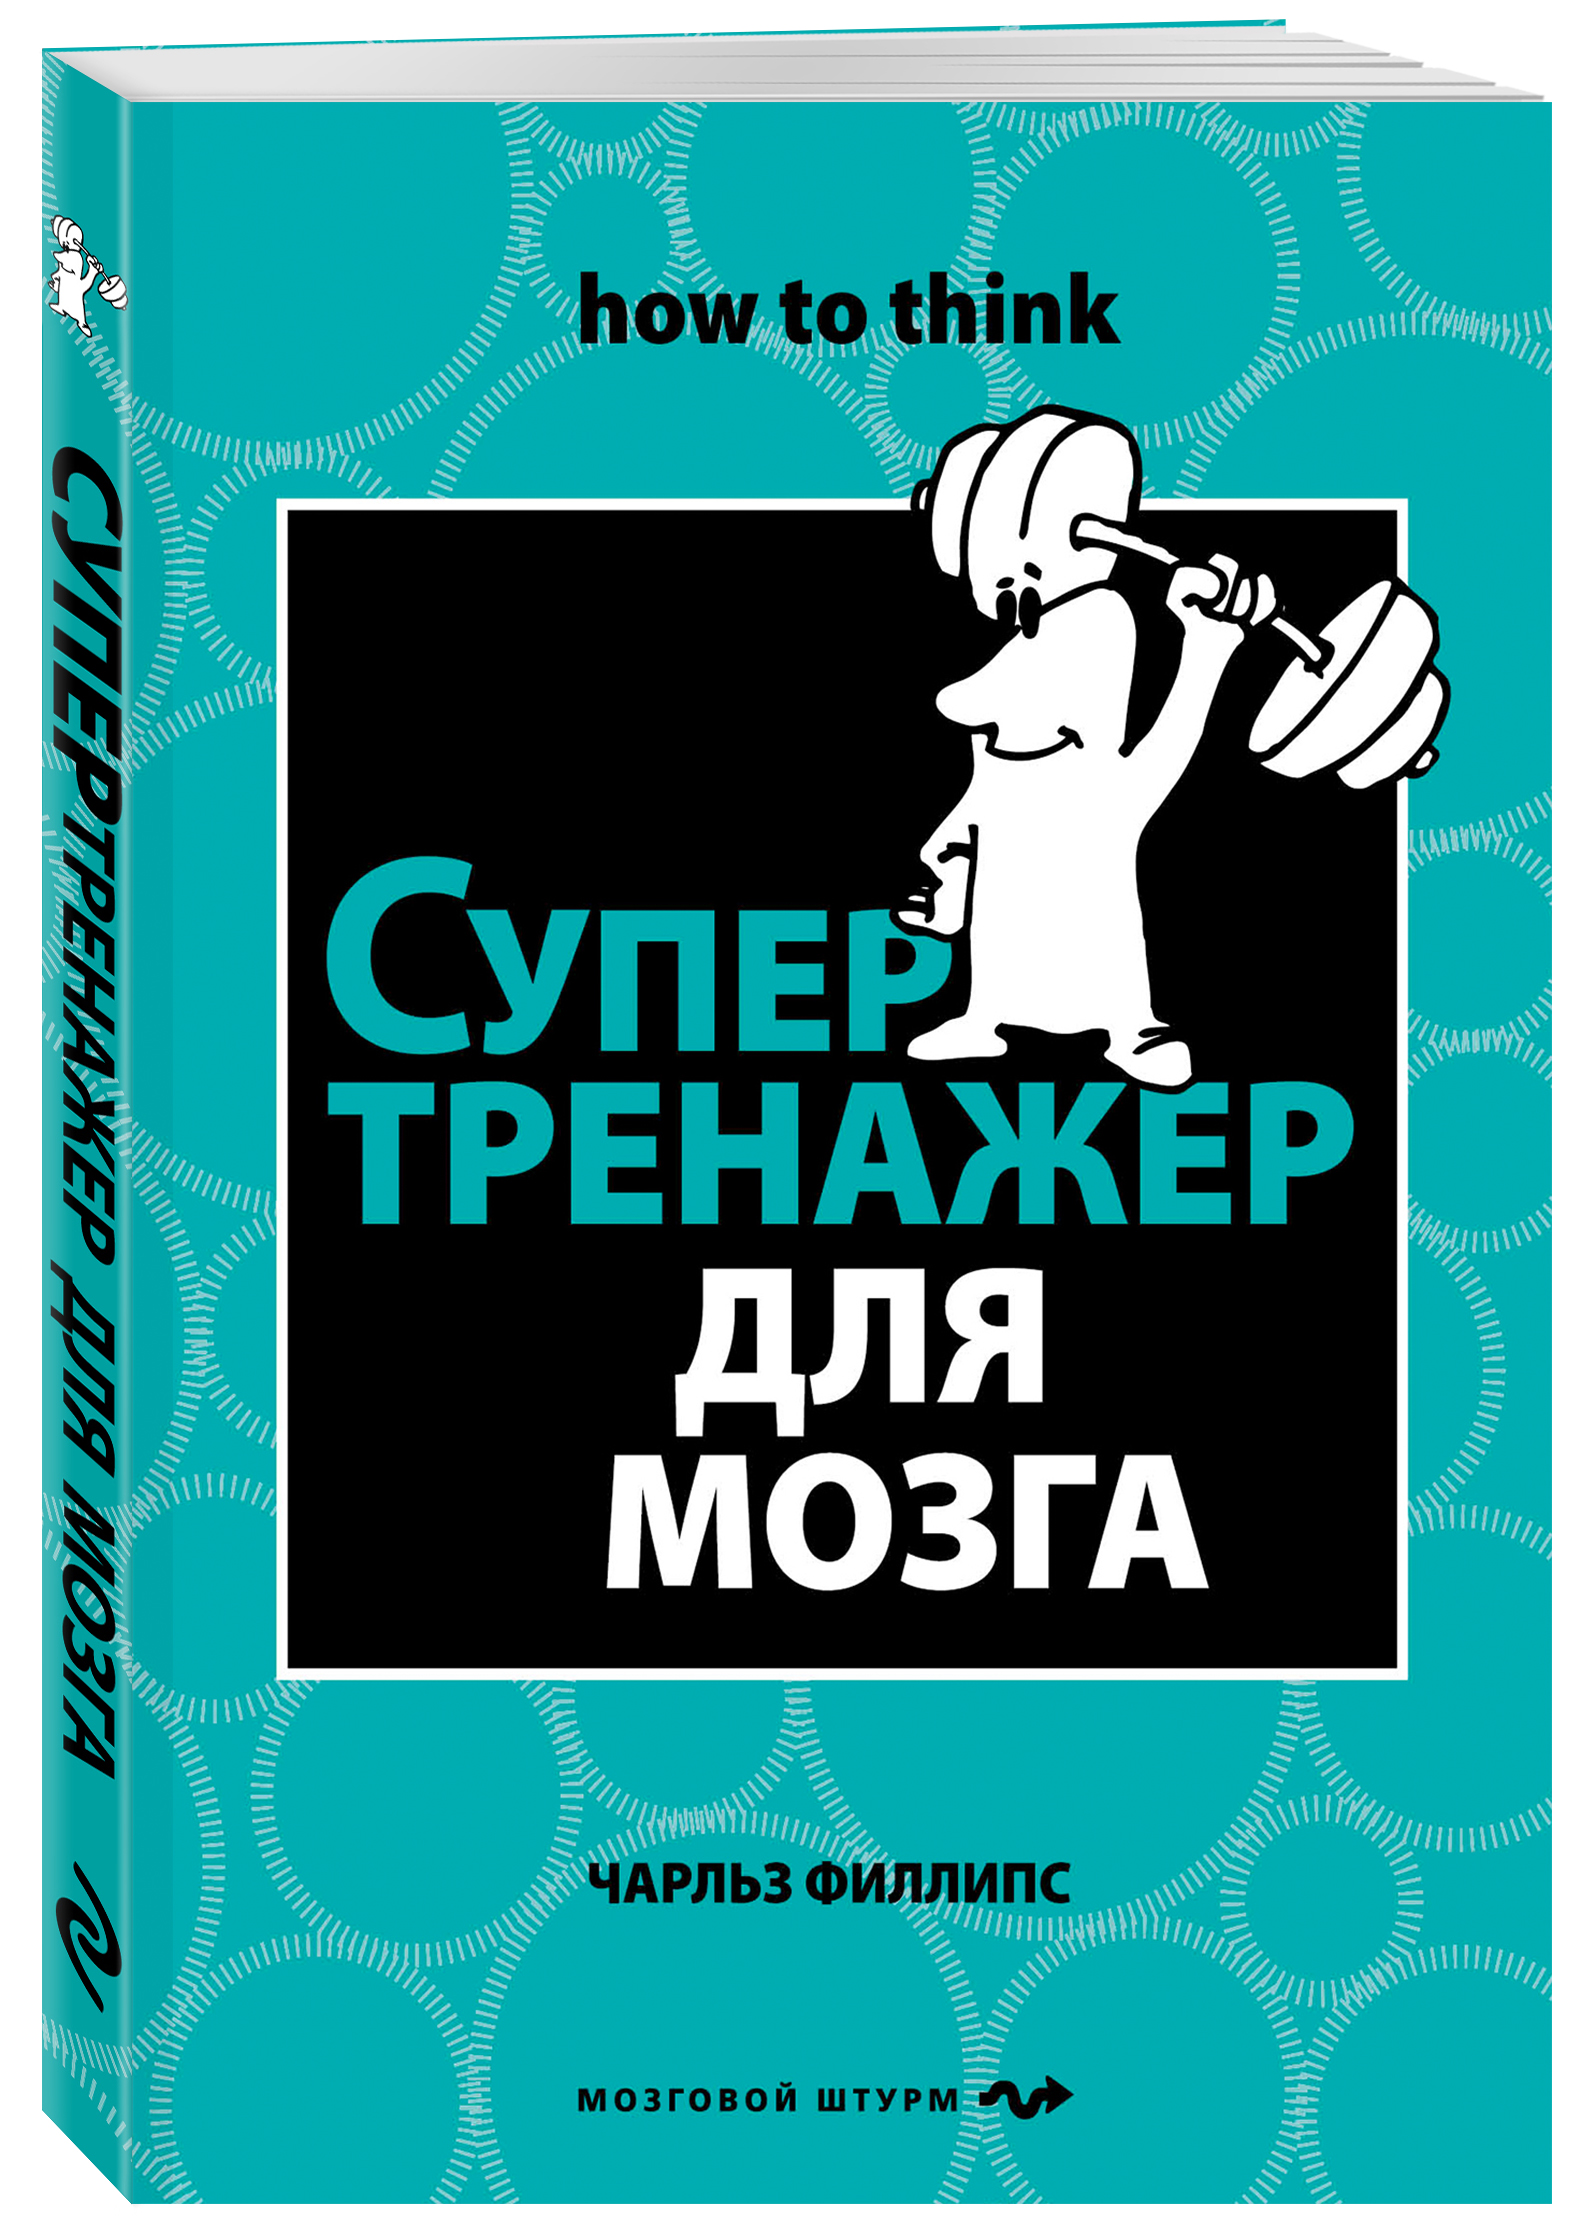 https://cdn.eksmo.ru/v2/ITD000000000198766/COVER/cover13d.jpg